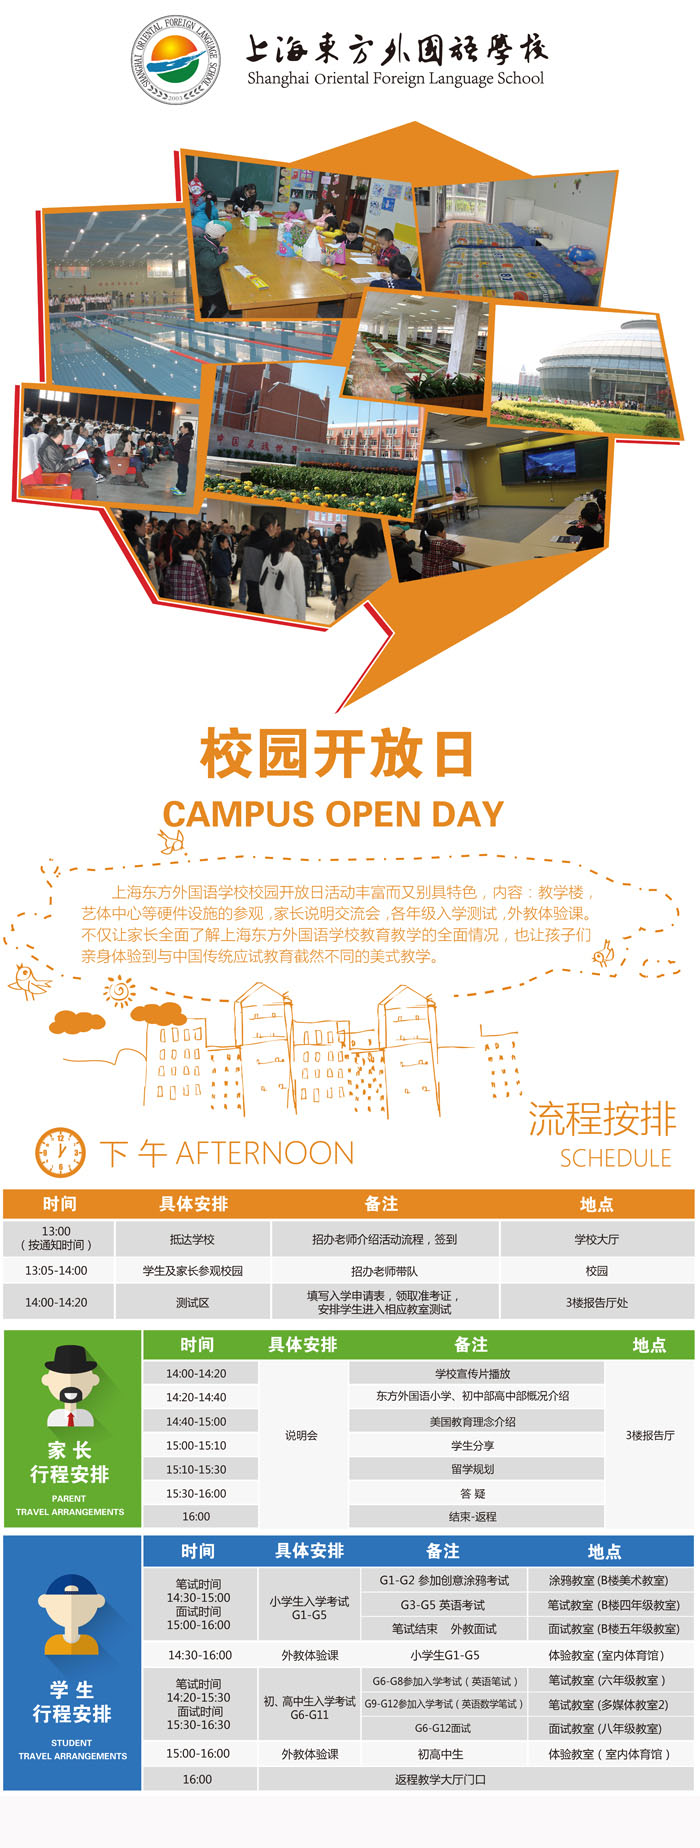   上海东方外国语学校2017年4月22日校园开放日免费